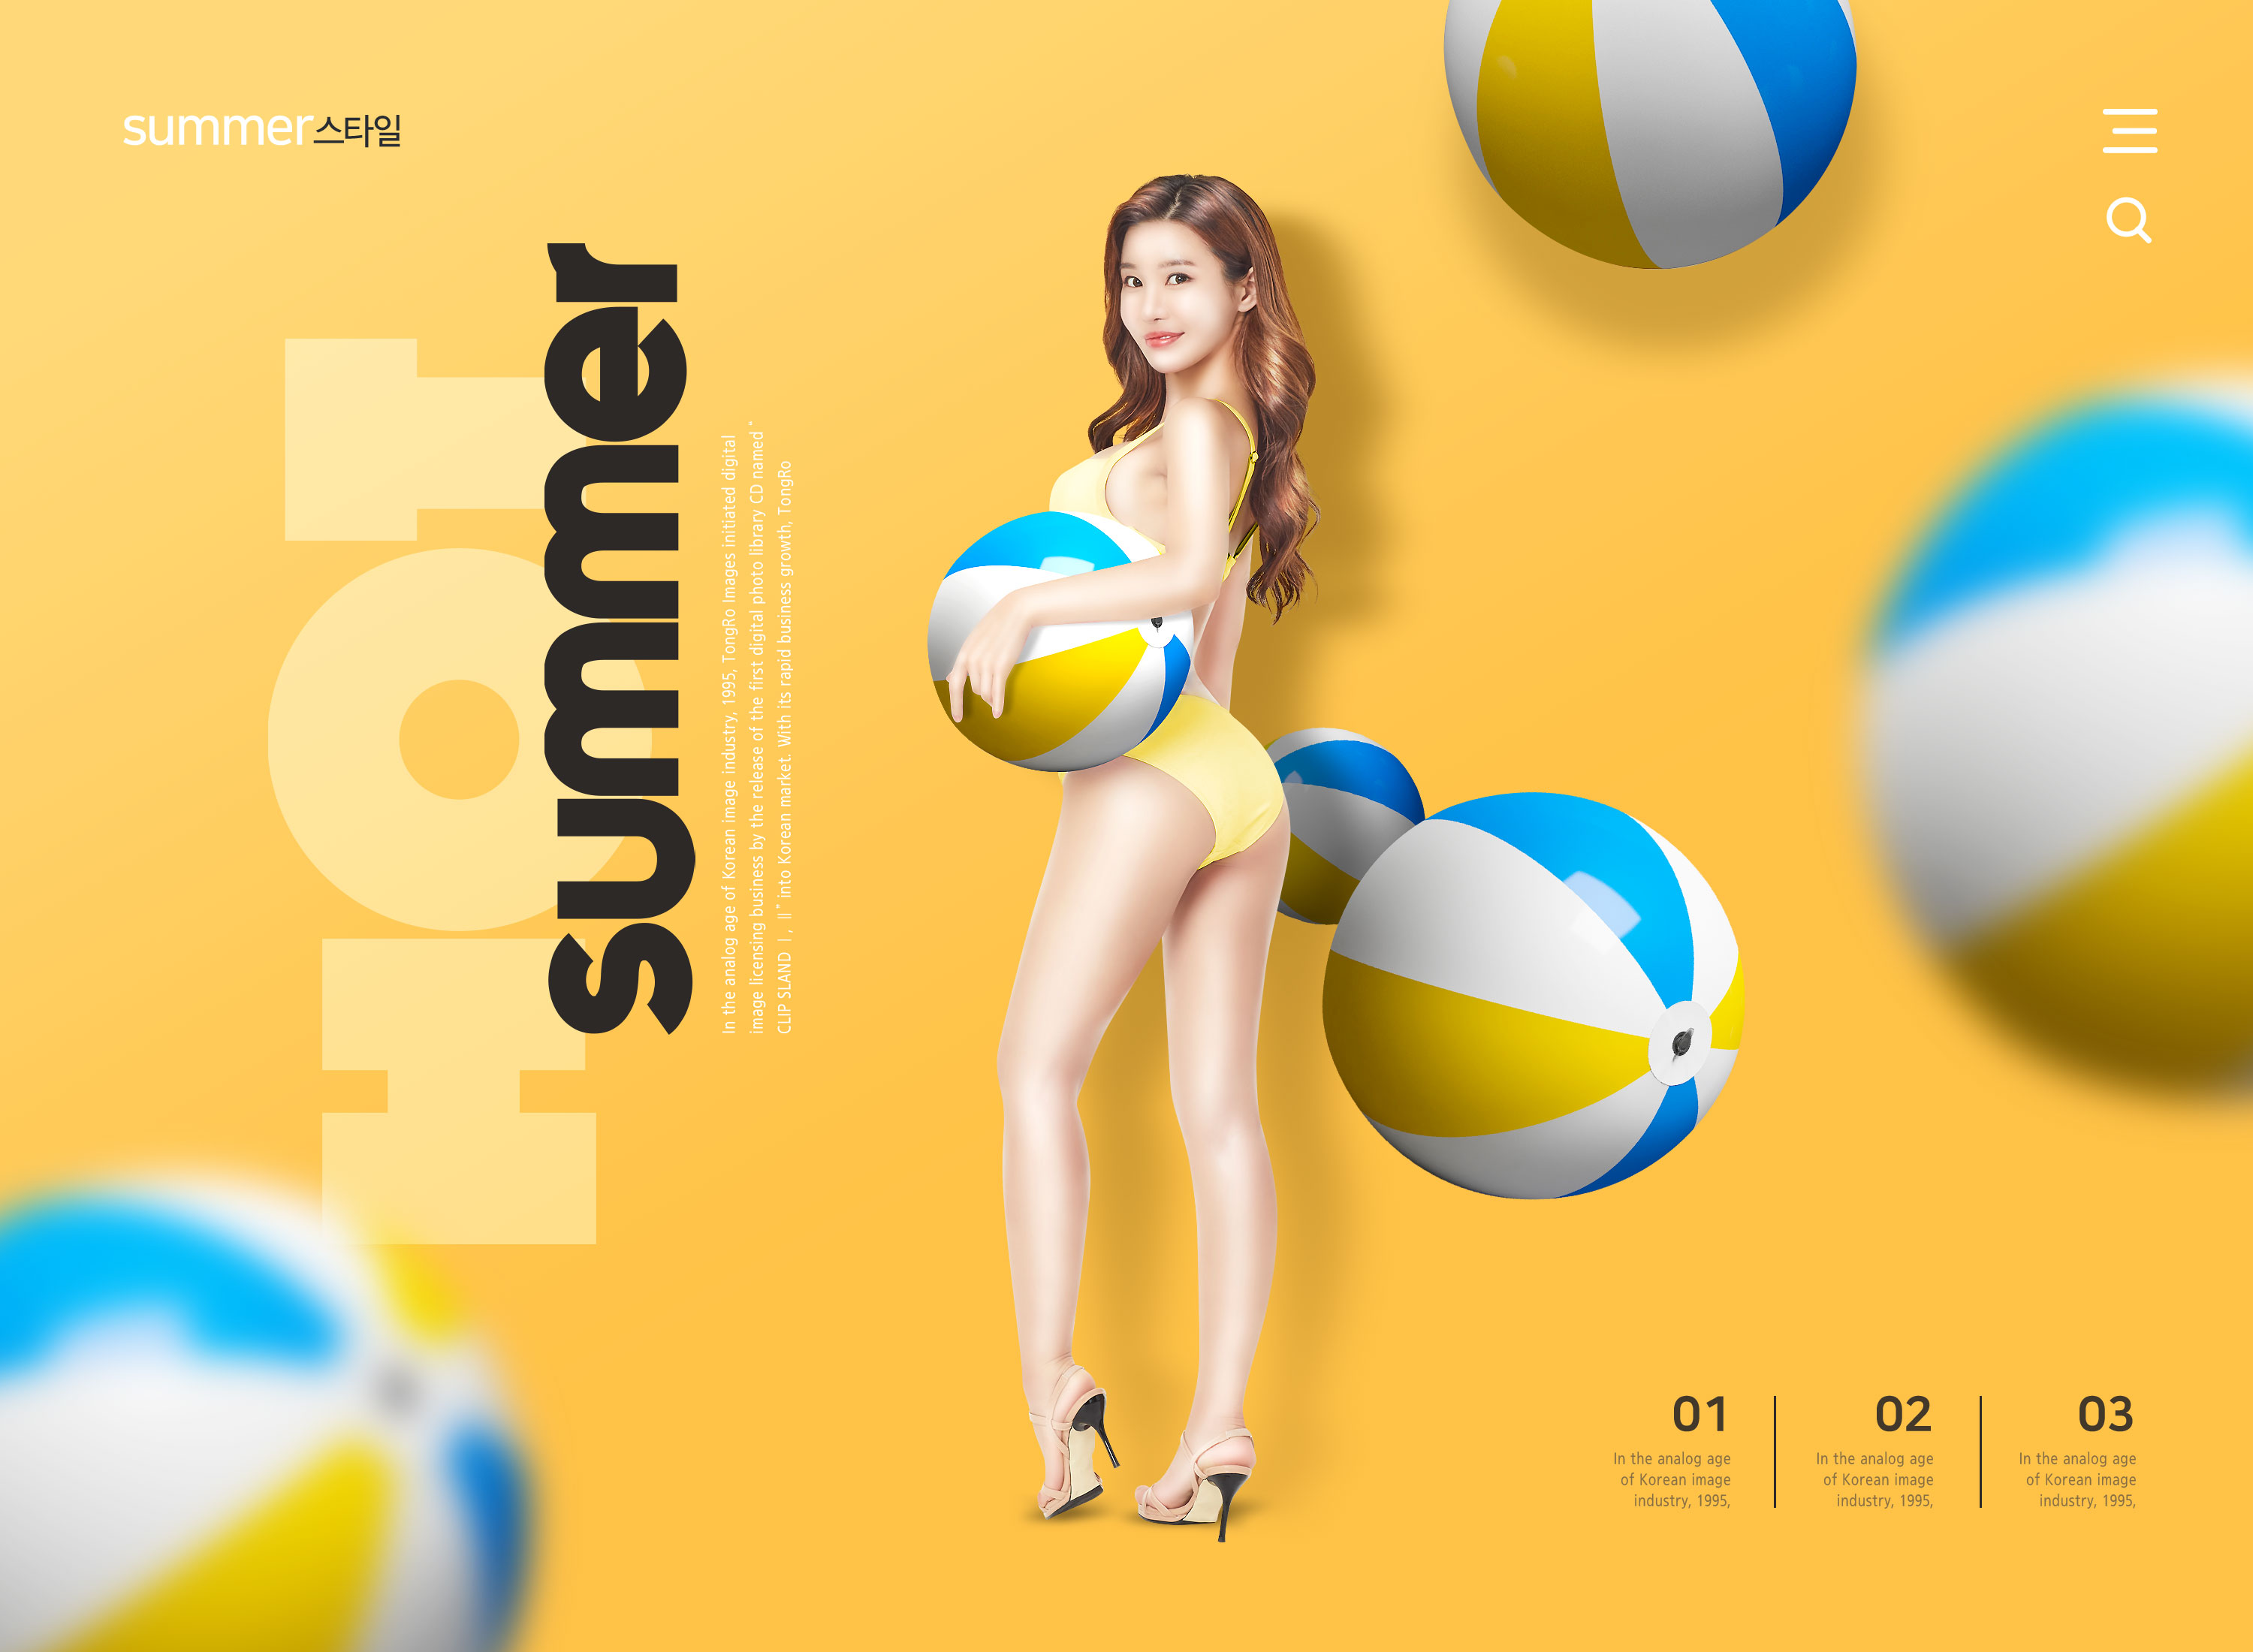 夏季沙滩排球派对活动主题设计素材插图